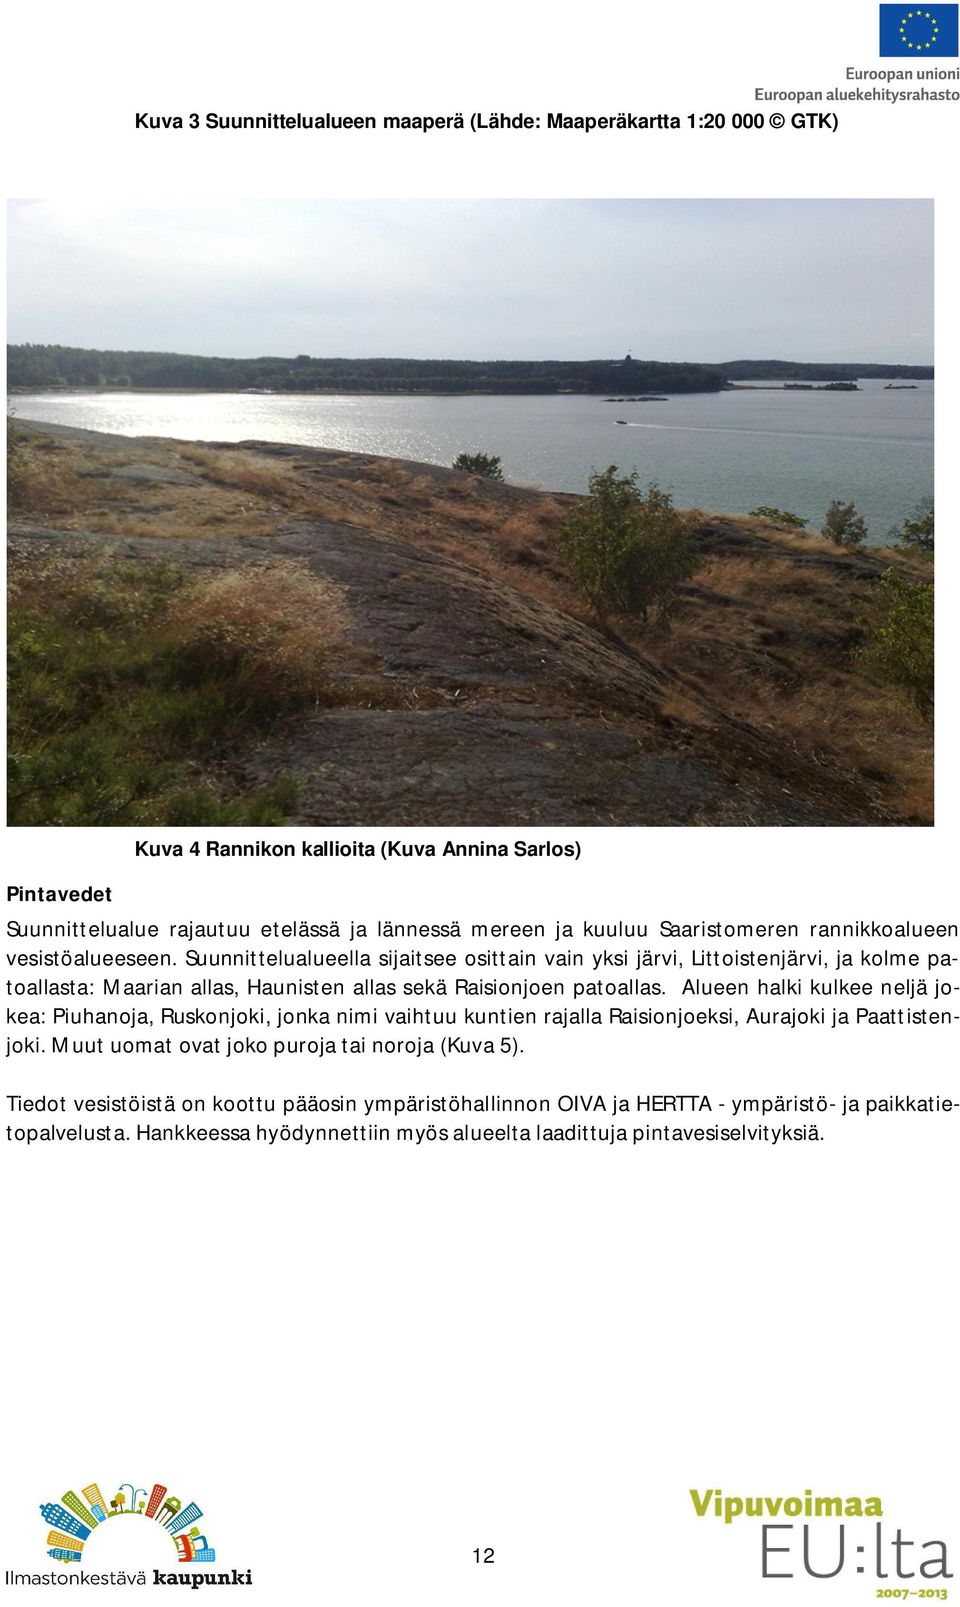 Suunnittelualueella sijaitsee osittain vain yksi järvi, Littoistenjärvi, ja kolme patoallasta: Maarian allas, Haunisten allas sekä Raisionjoen patoallas.